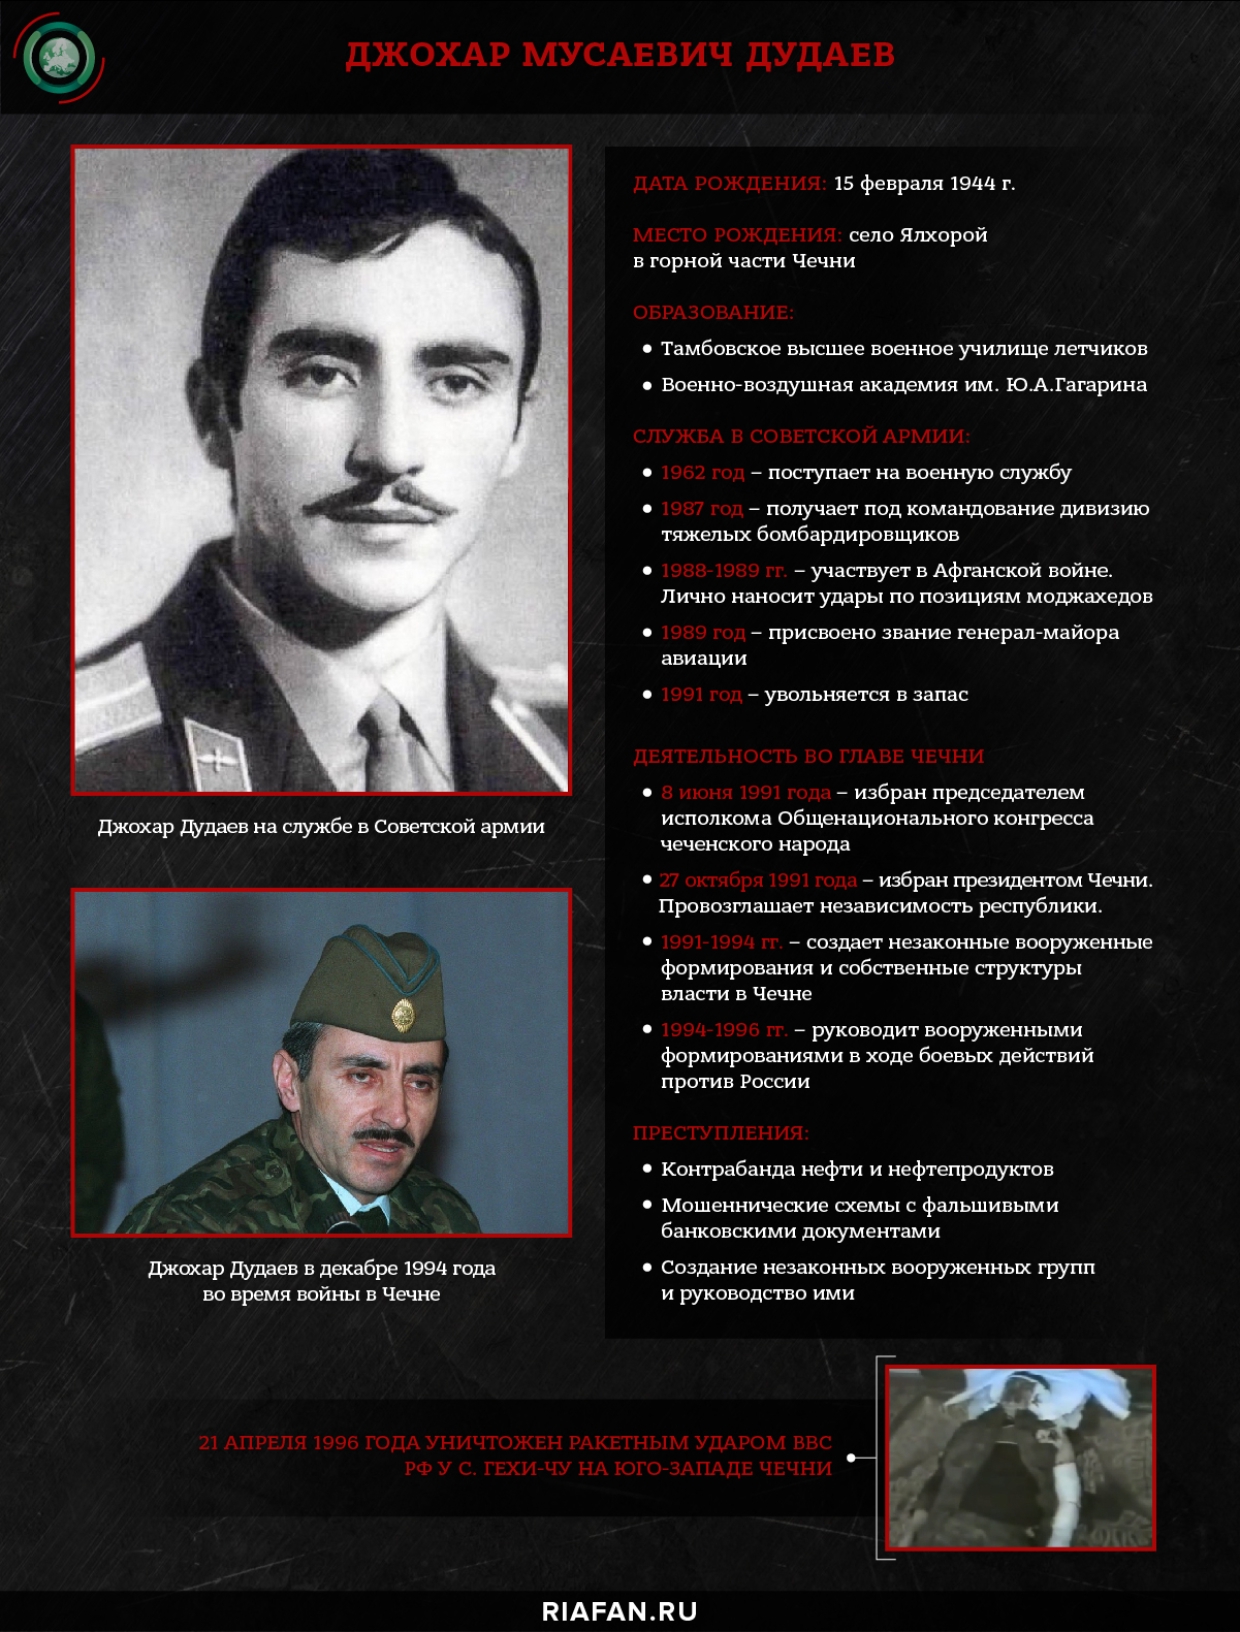 Зелимхан Яндарбиев: человек, сделавший Чеченскую войну неизбежной